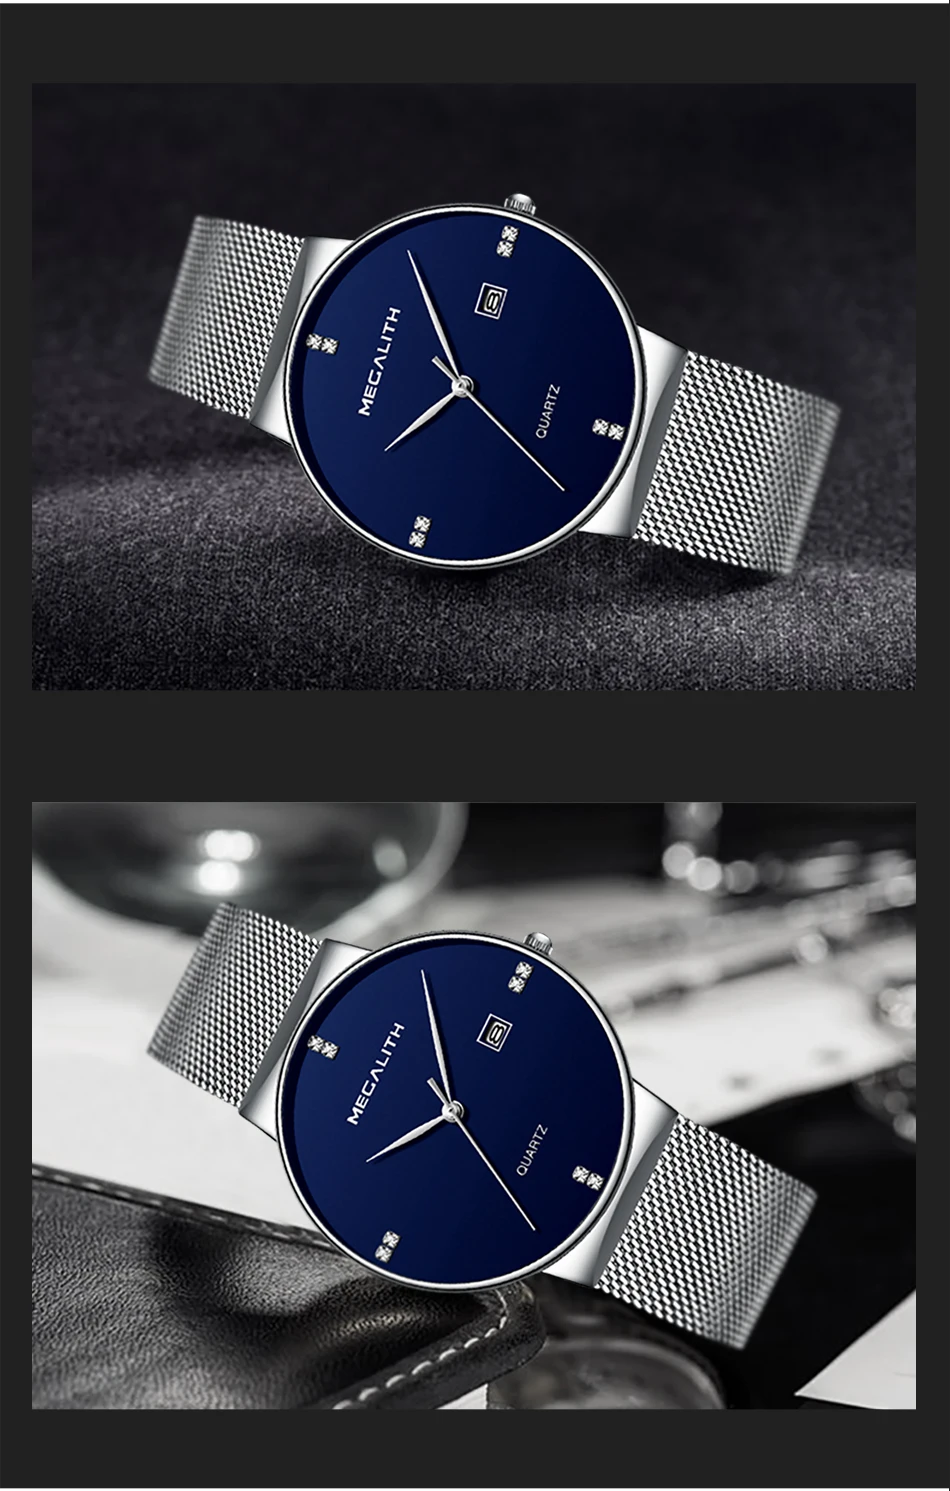 Модные часы MEGALITH, мужские спортивные водонепроницаемые часы с хронографом, тонкие сетчатые стальные повседневные мужские кварцевые часы, мужские часы